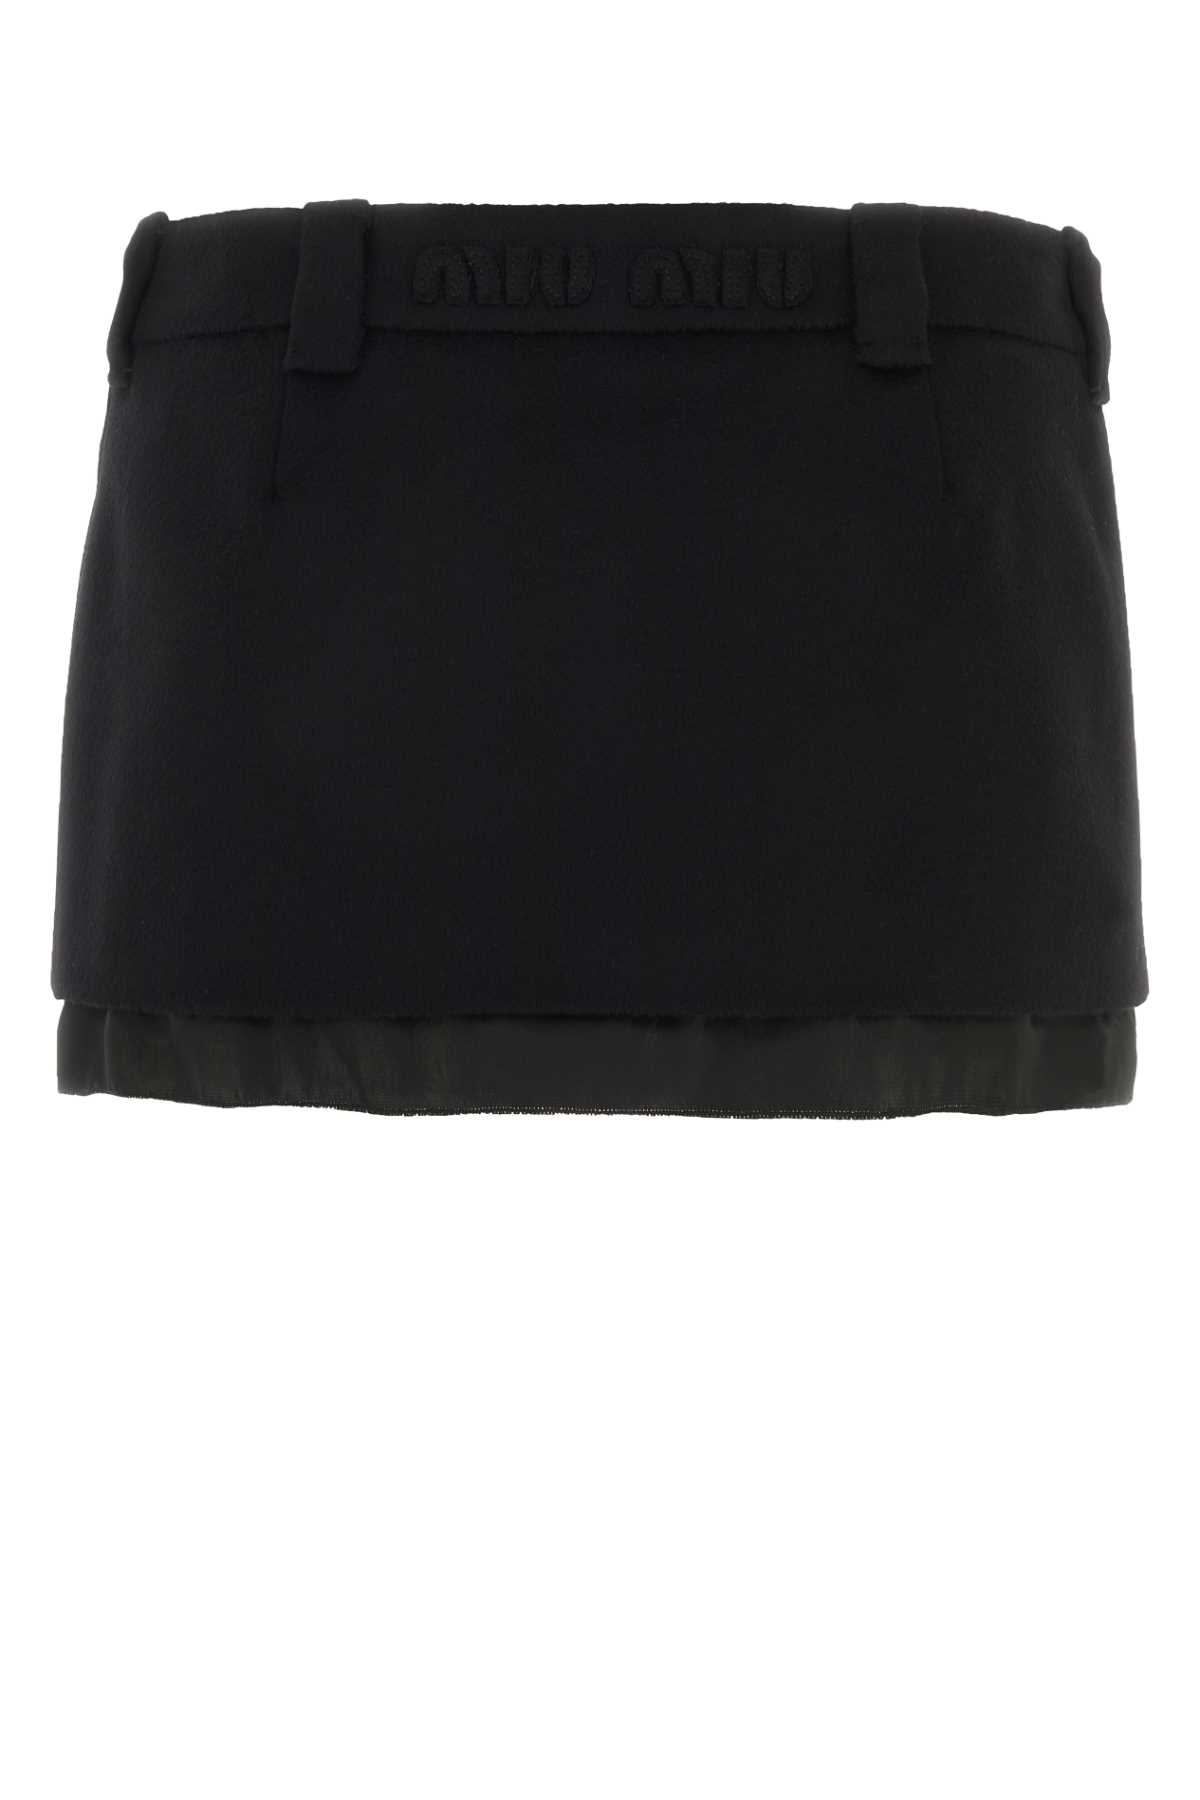 Miu Miu Black Wool Blend Mini Skirt In Nero